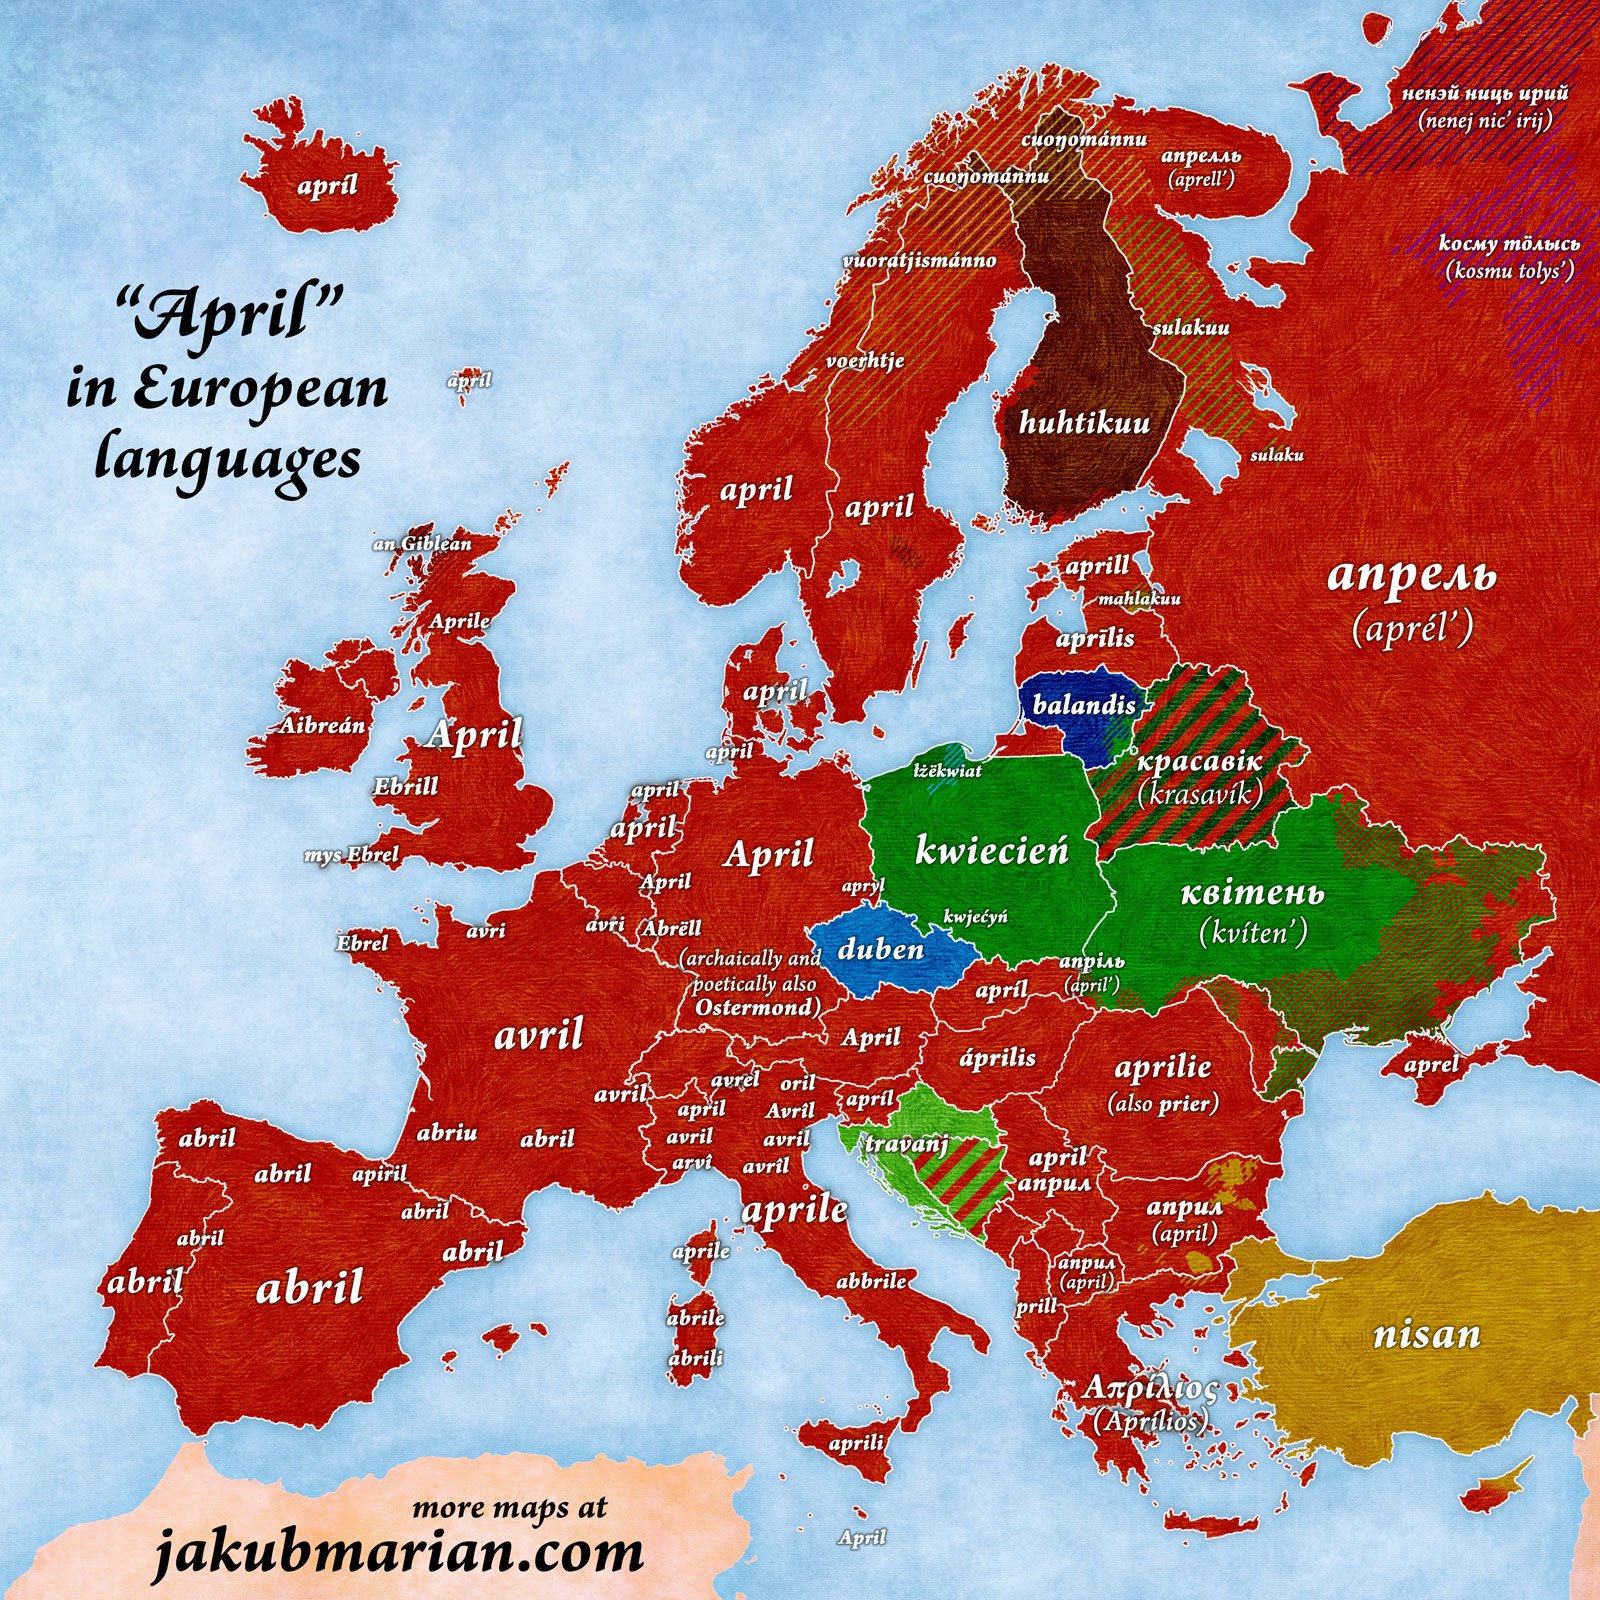 April in European languages